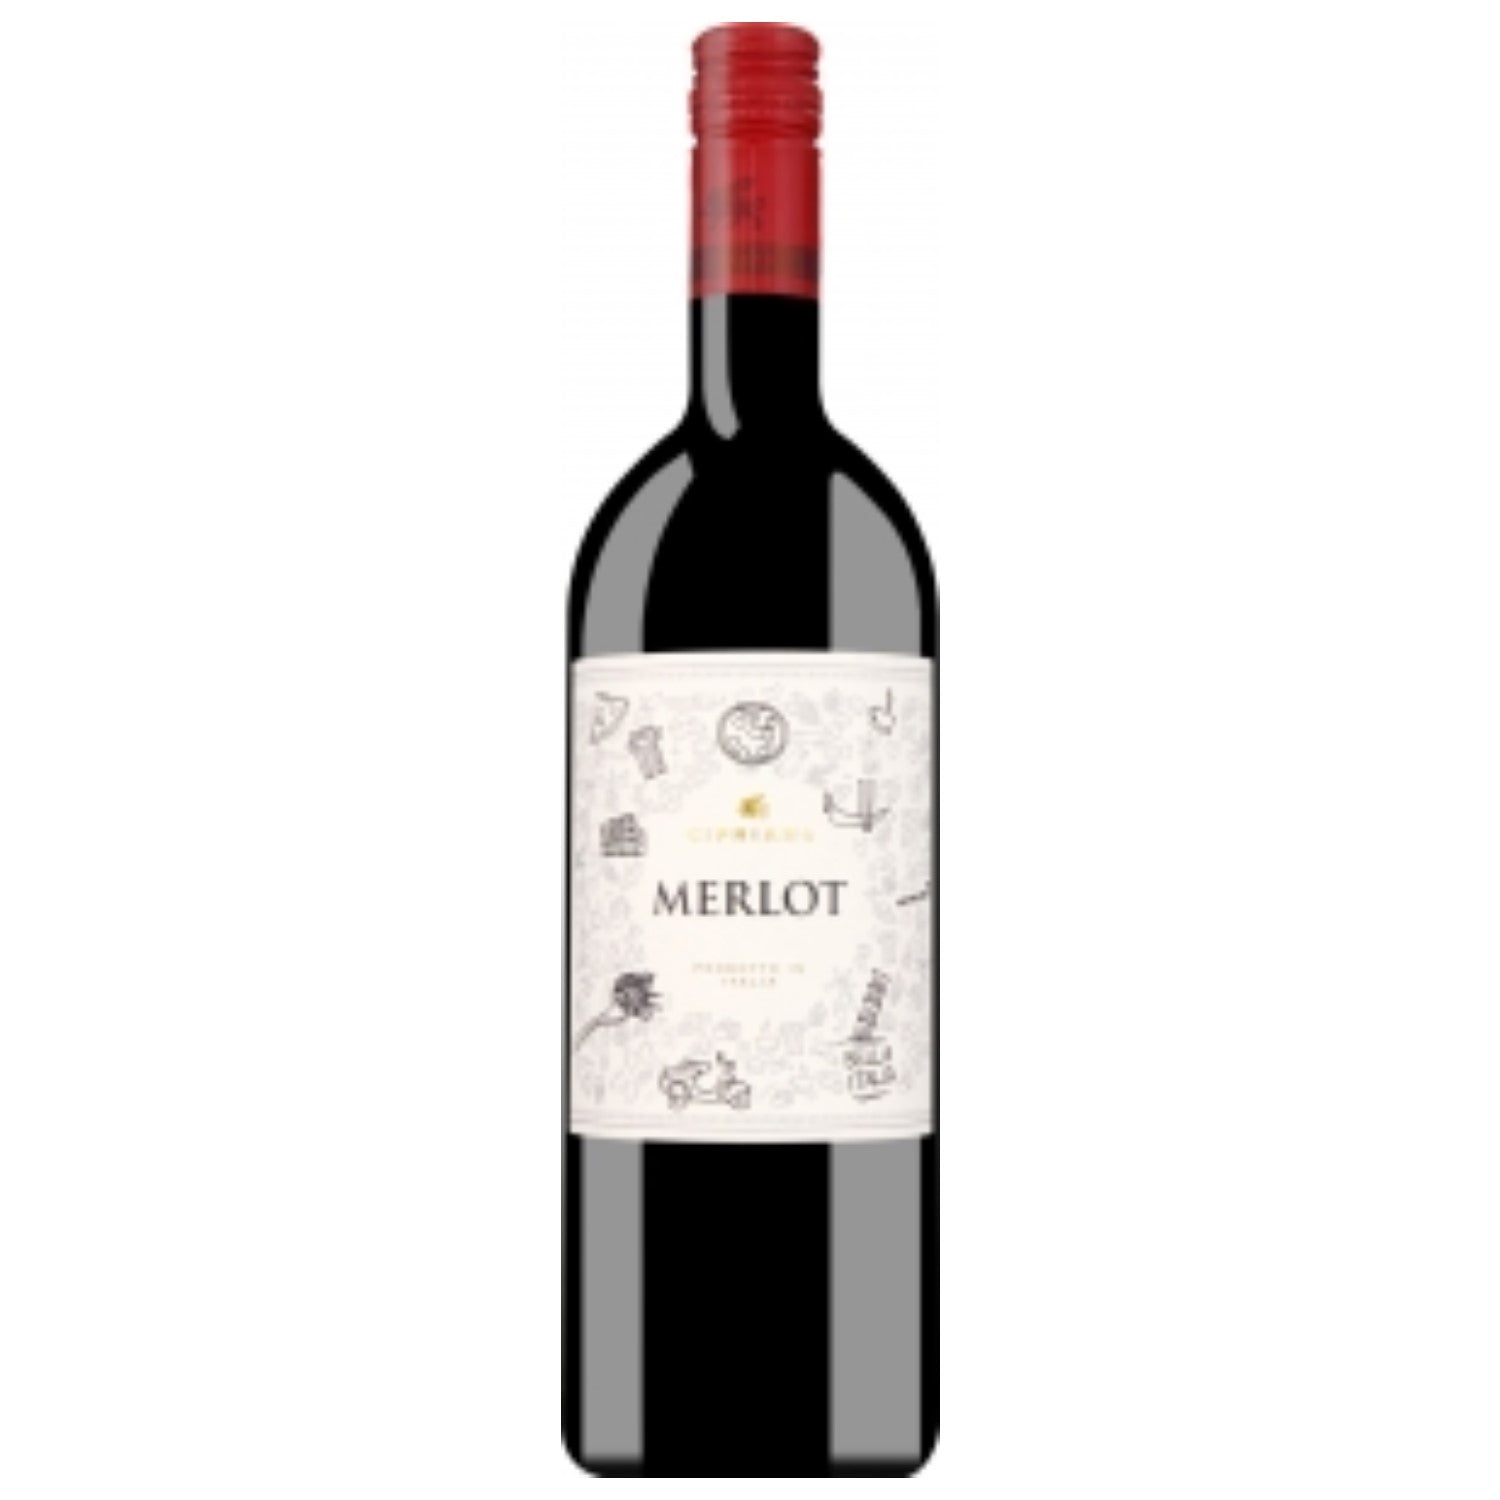 Cipriano Merlot Veneto Rotwein italienischer Wein trocken IGT Italien (6 x 1.0l) - Versanel -